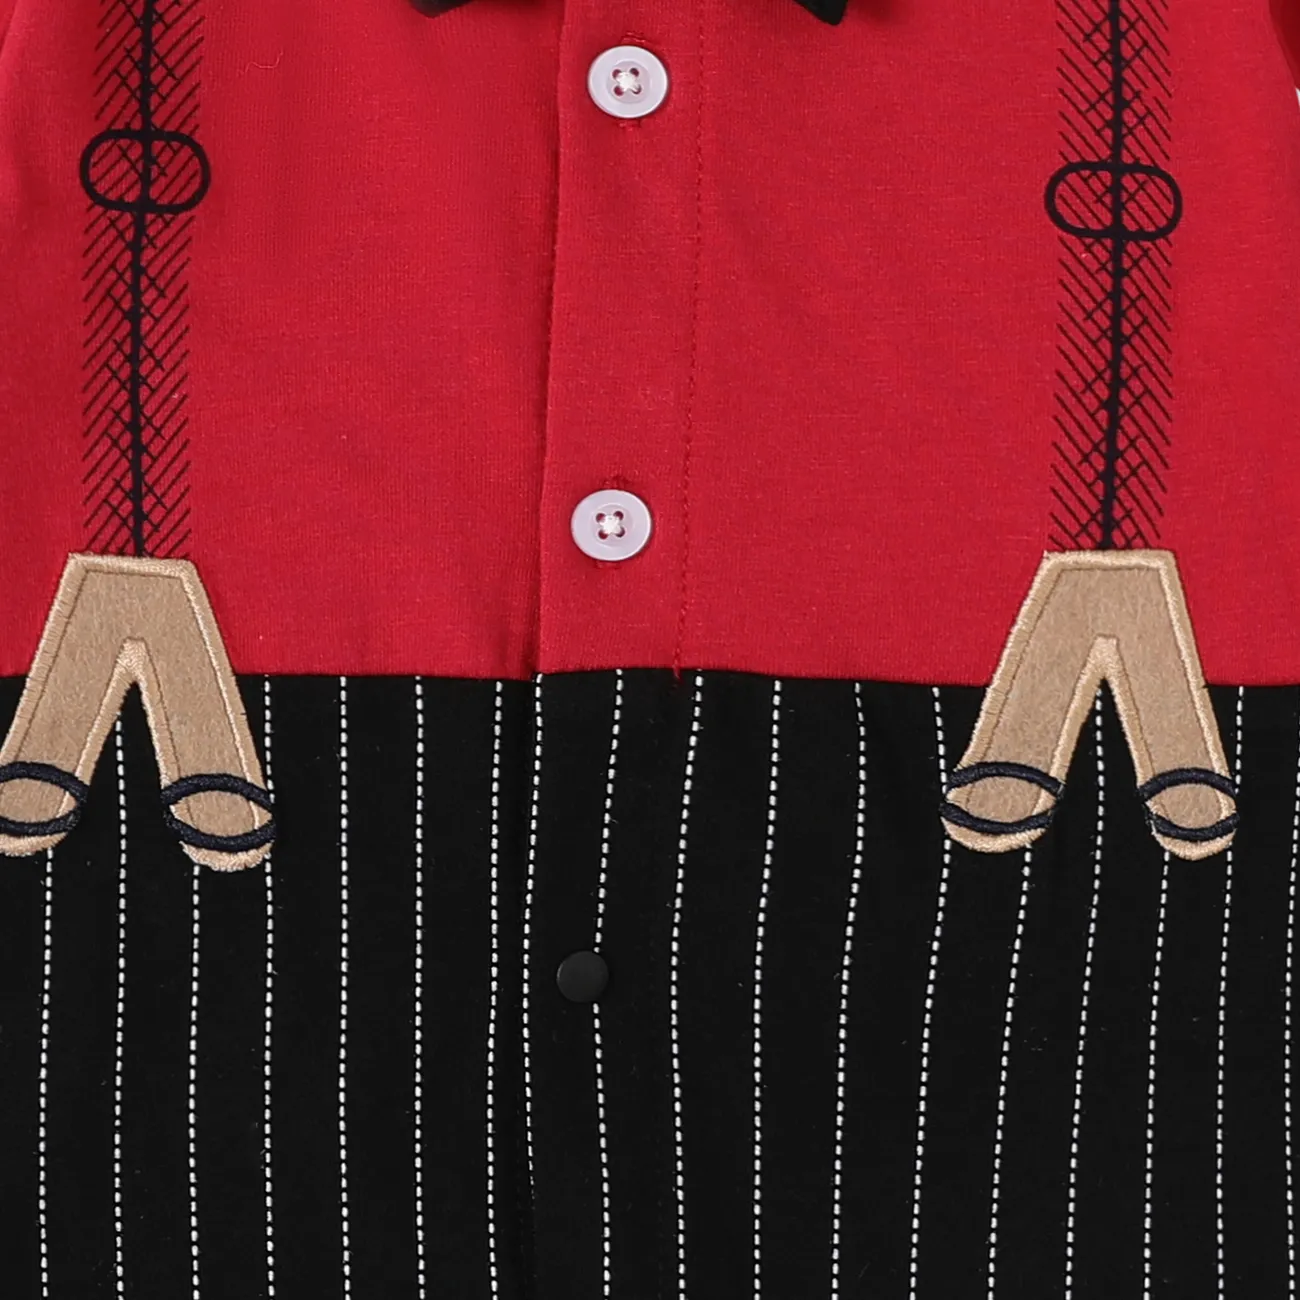 Bébé Garçon Couture de tissus Classique Manches courtes Combinaisons Rouge big image 1